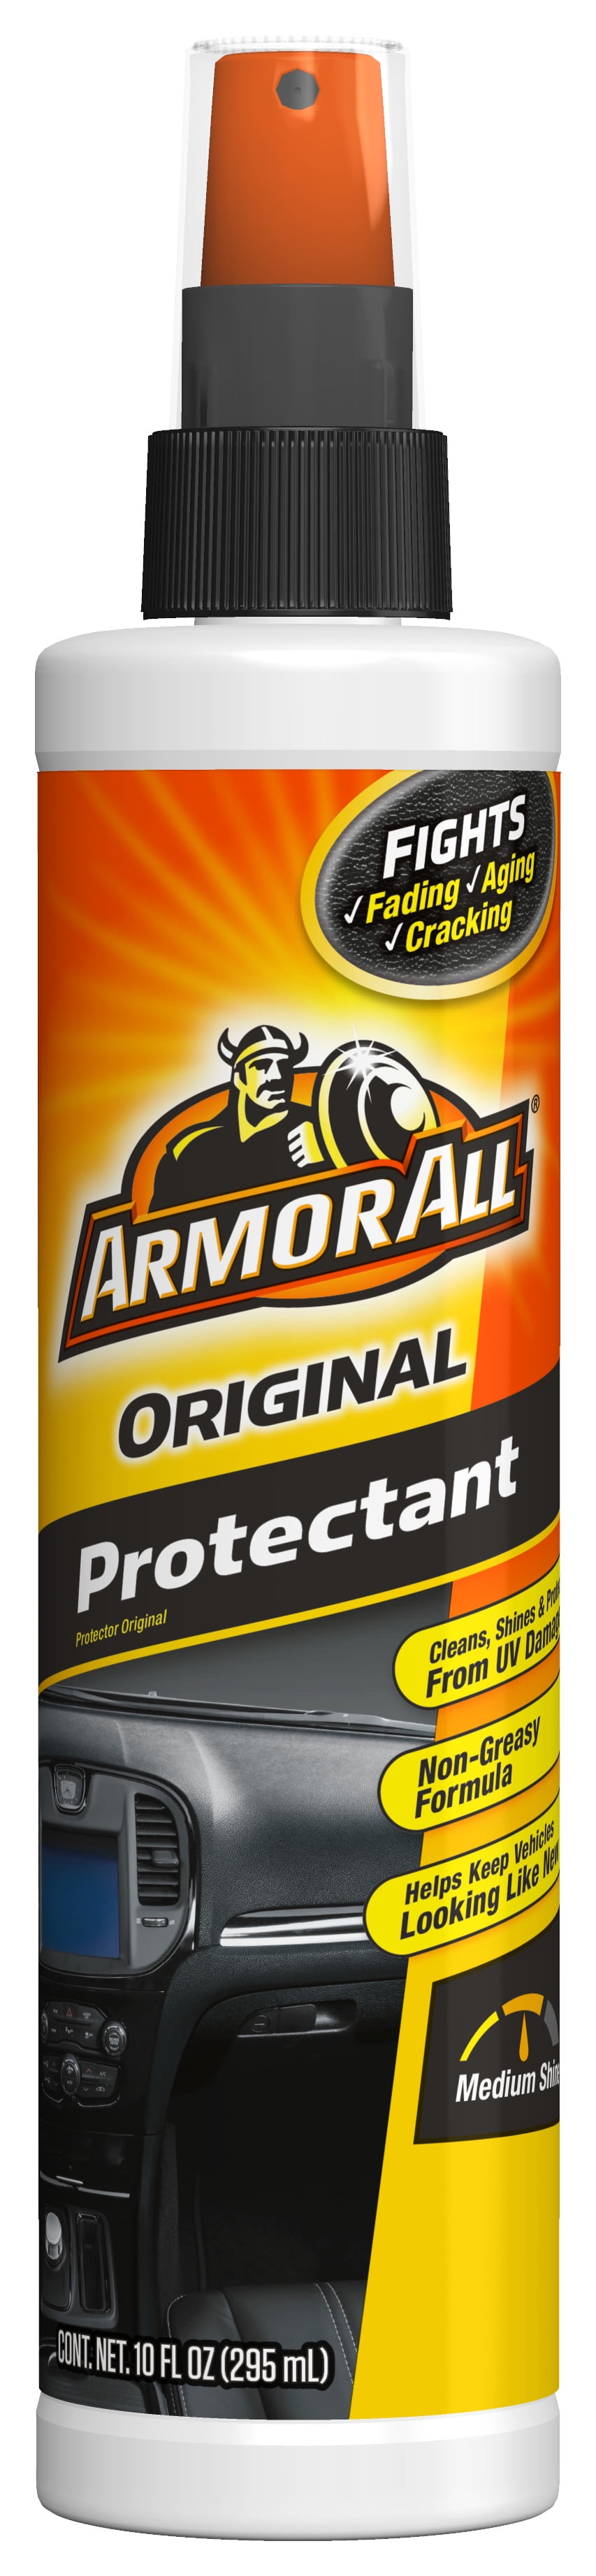 Buy Armor All Original Protectant 10 Oz.